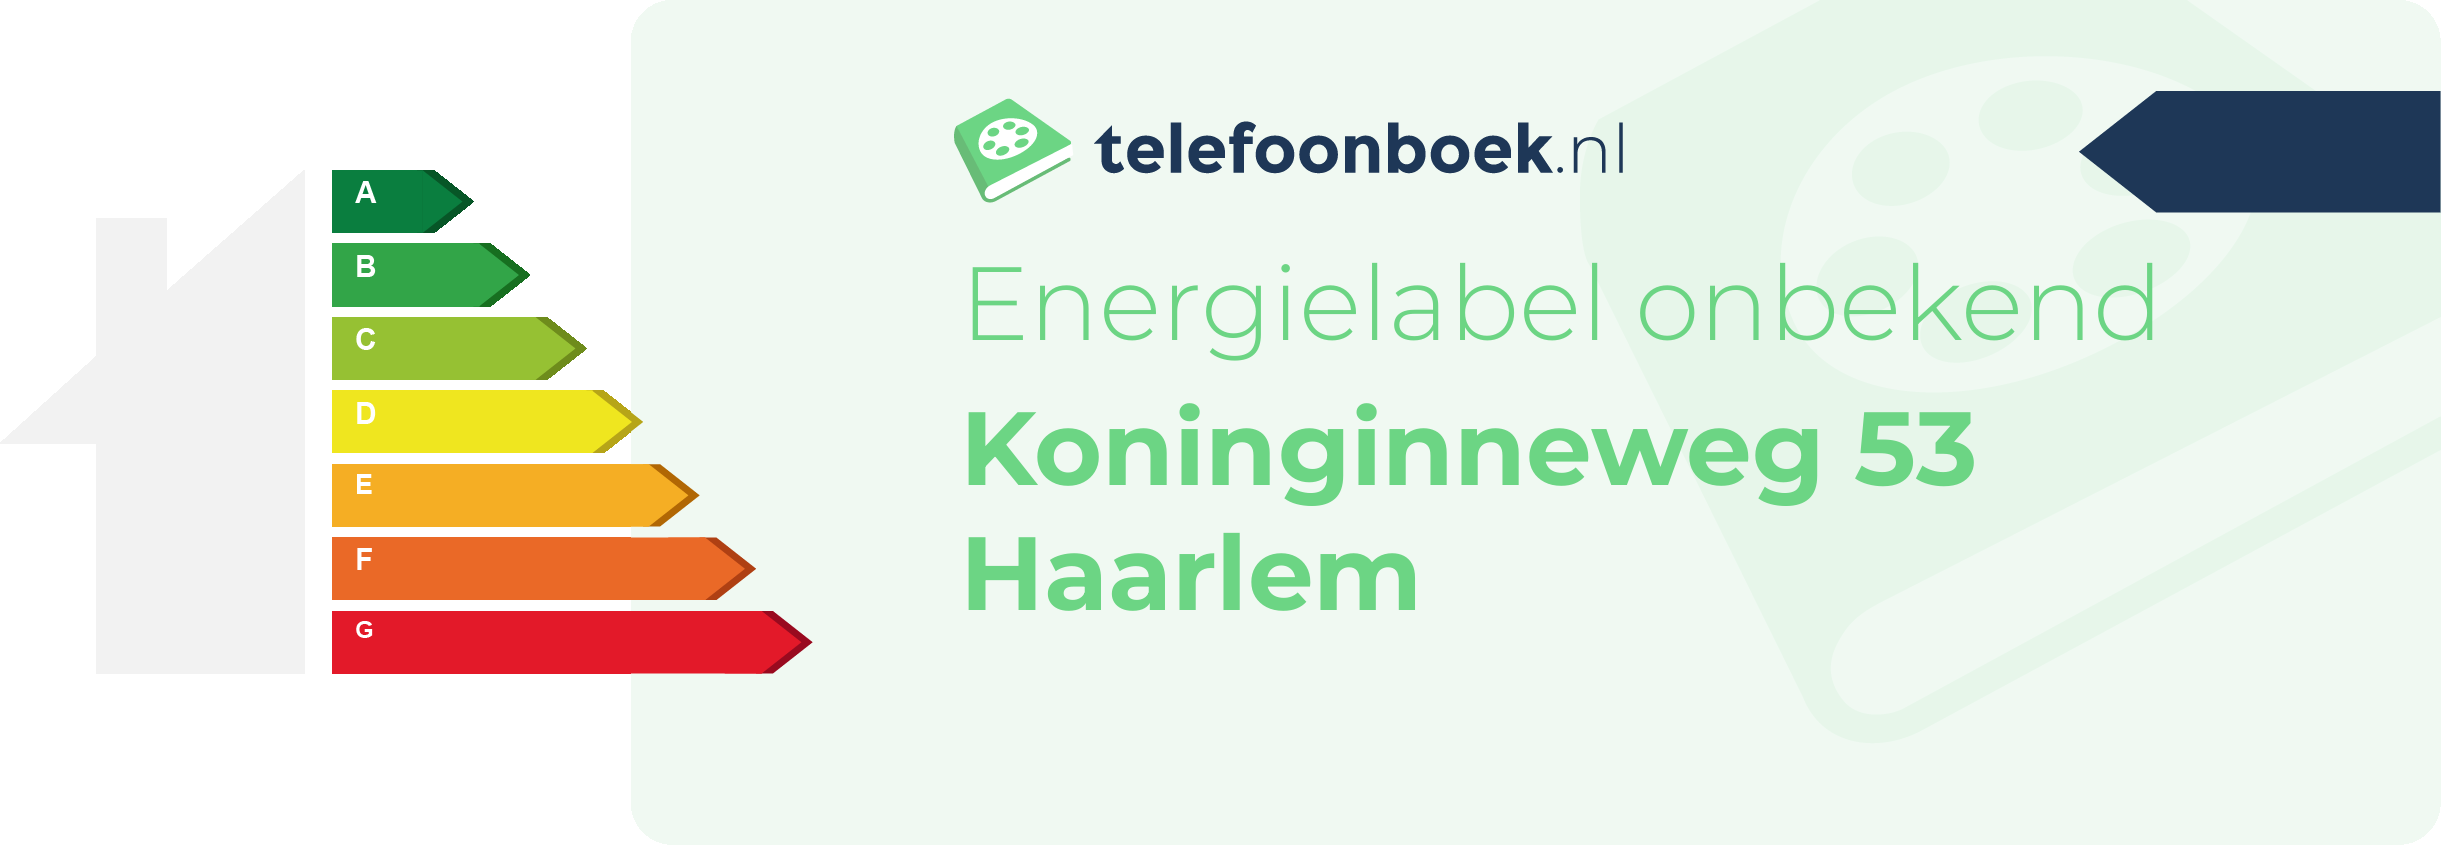 Energielabel Koninginneweg 53 Haarlem